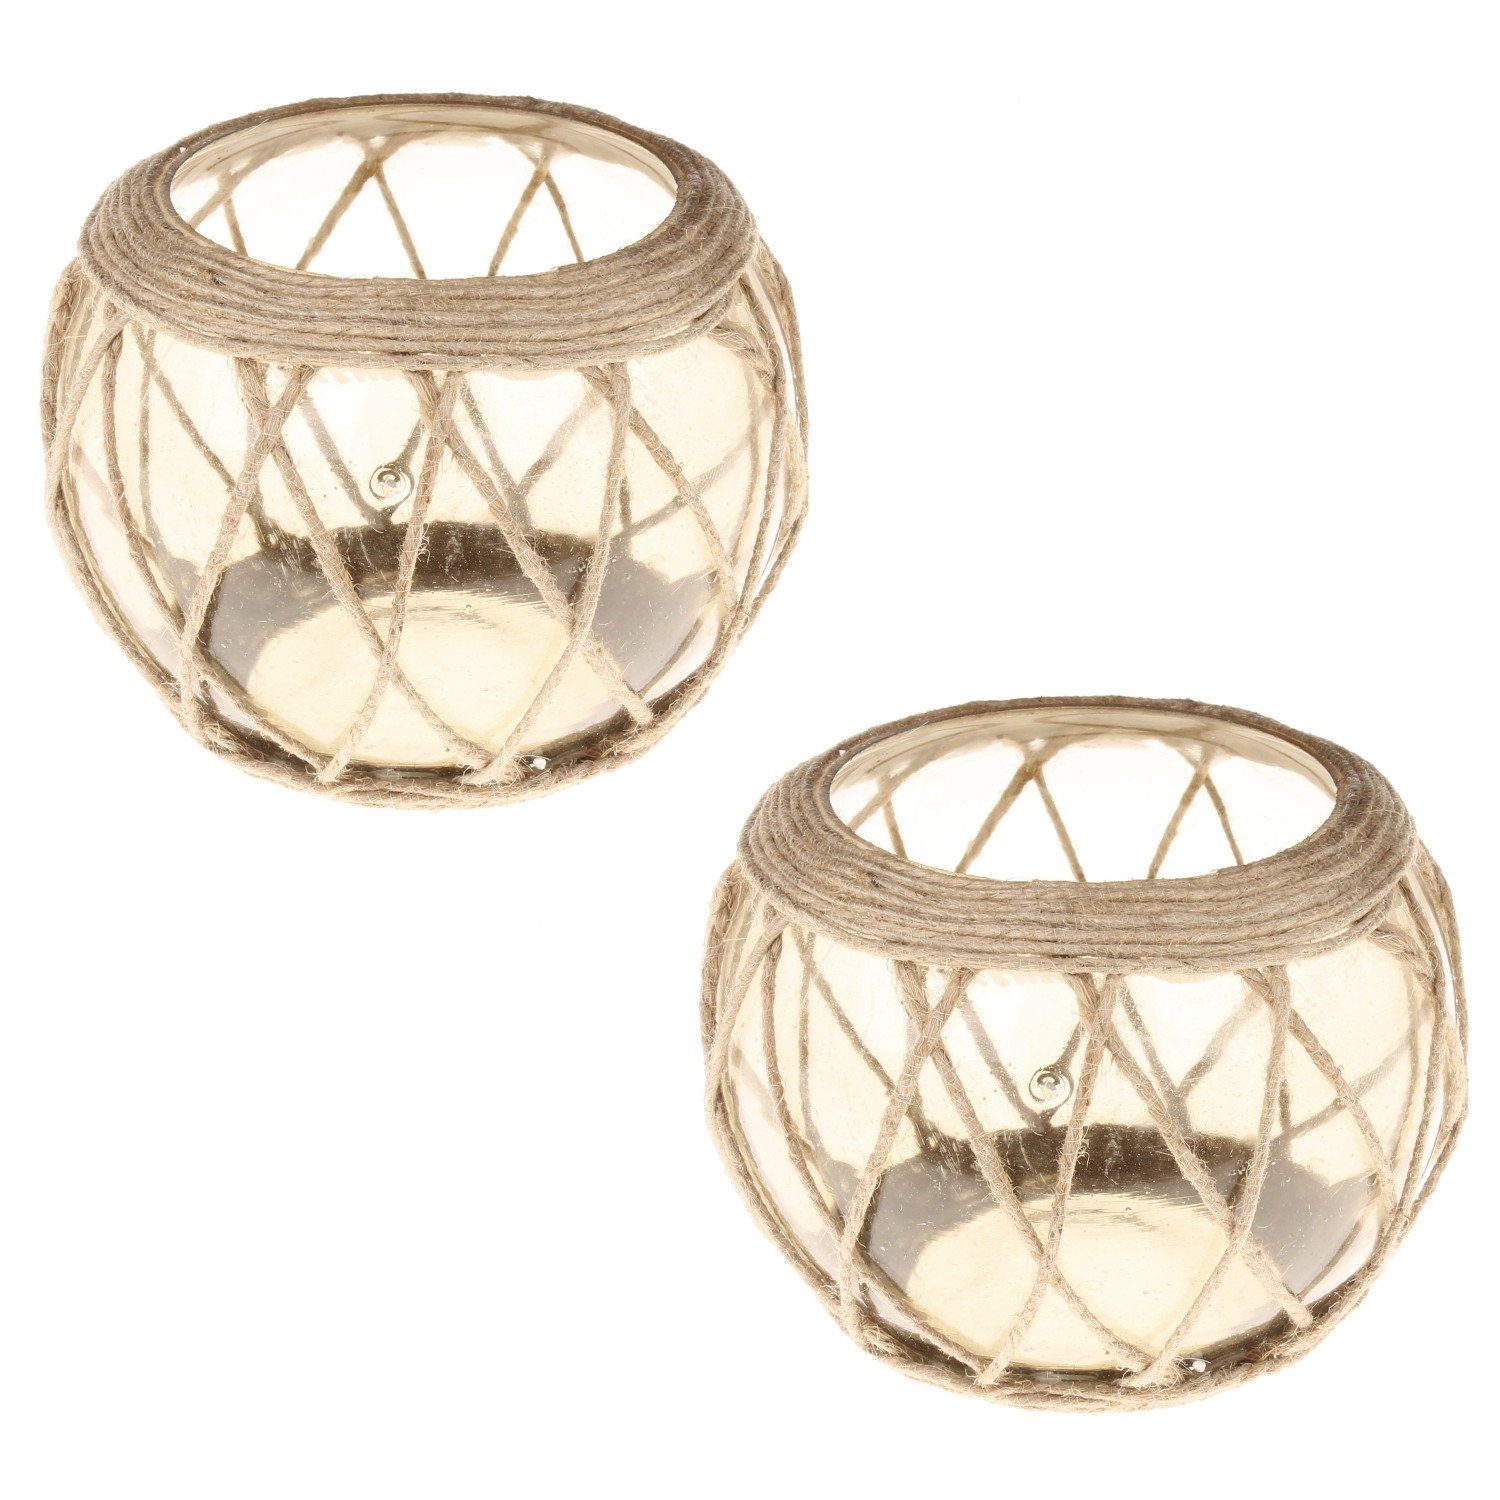 Macosa Design Windlicht Set, (2er Glas Kerzenglas Kerzenhalter Jute Teelichtglas St), Teelichthalter 2 Kerzenständer Home